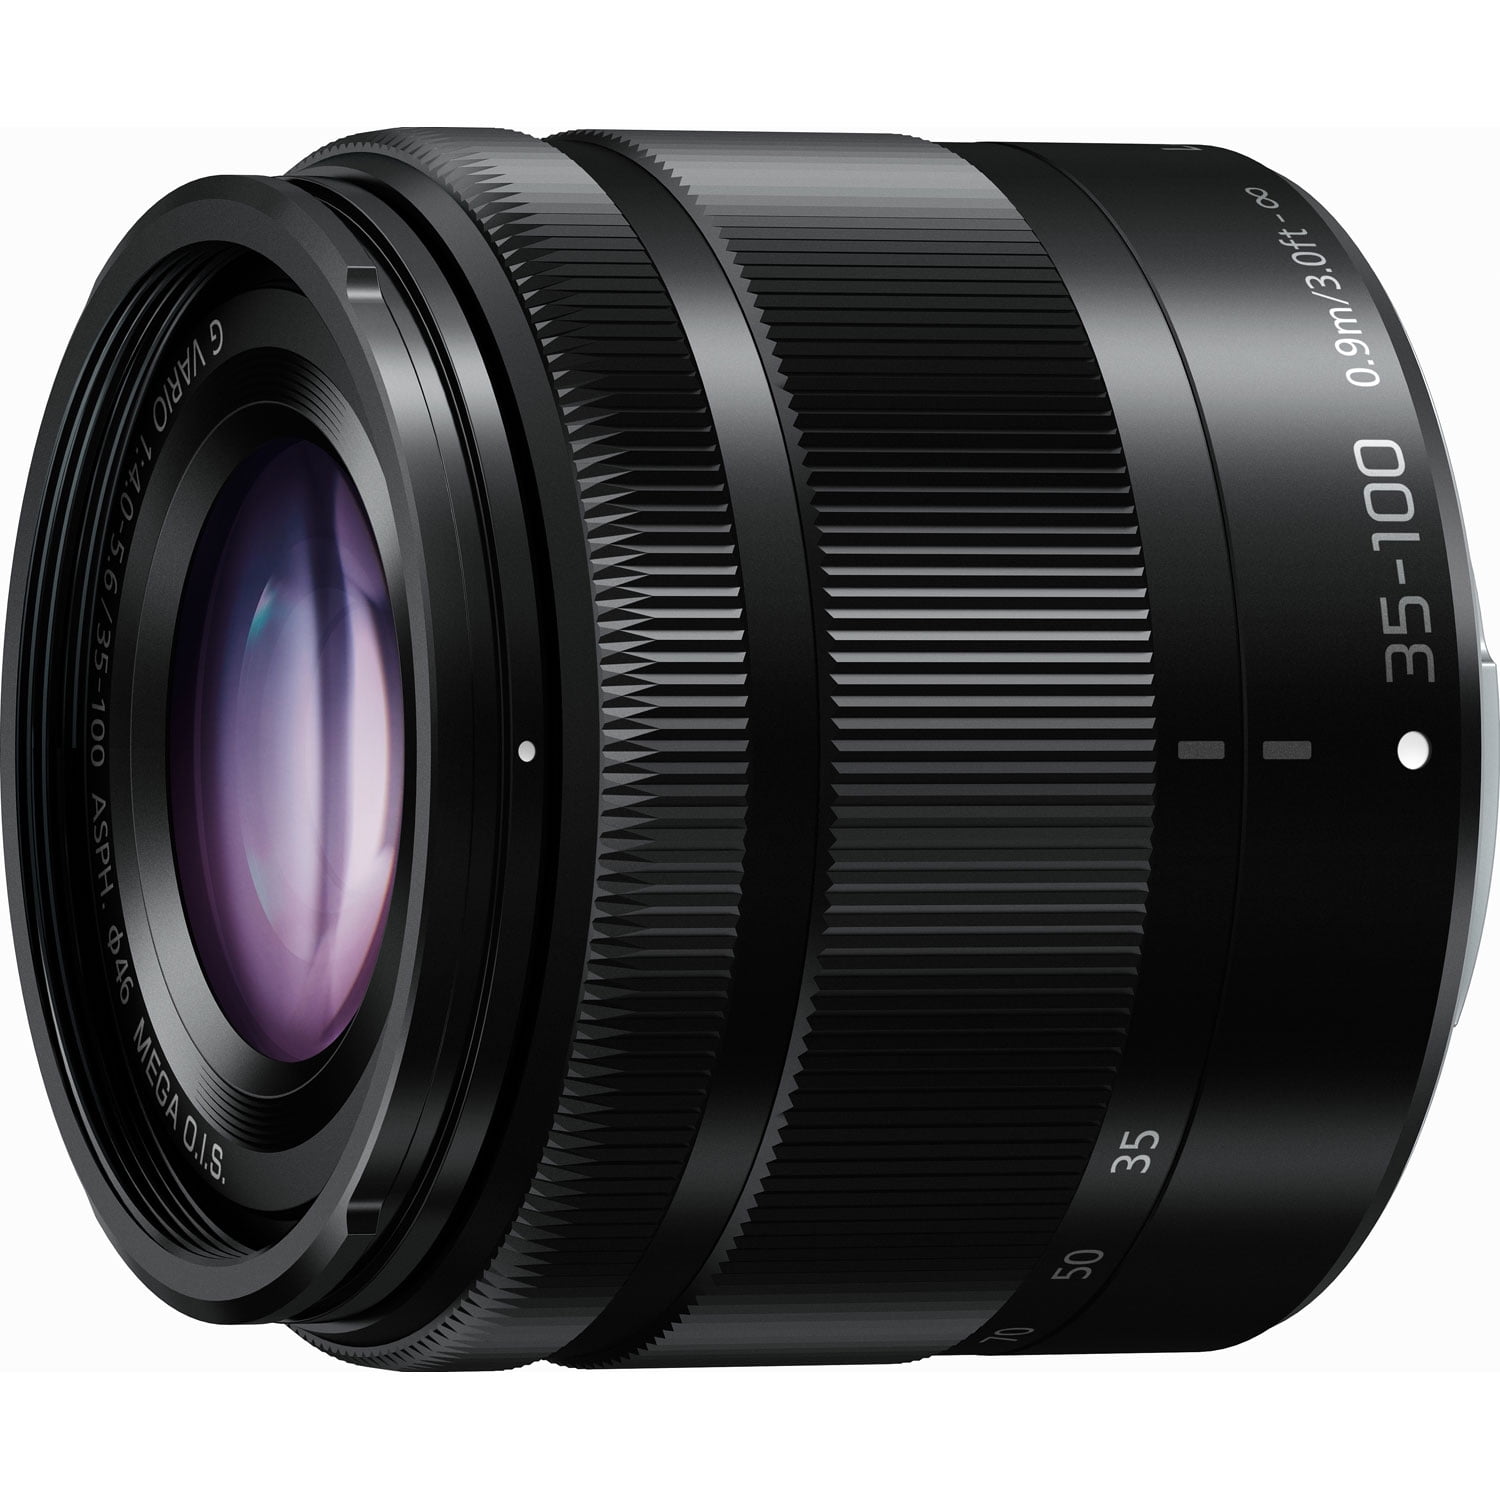 Ellende Viskeus kraai Panasonic Lumix G Vario 35-100mm f/4.0-5.6 OIS Zoom Lens (Black) -  Walmart.com